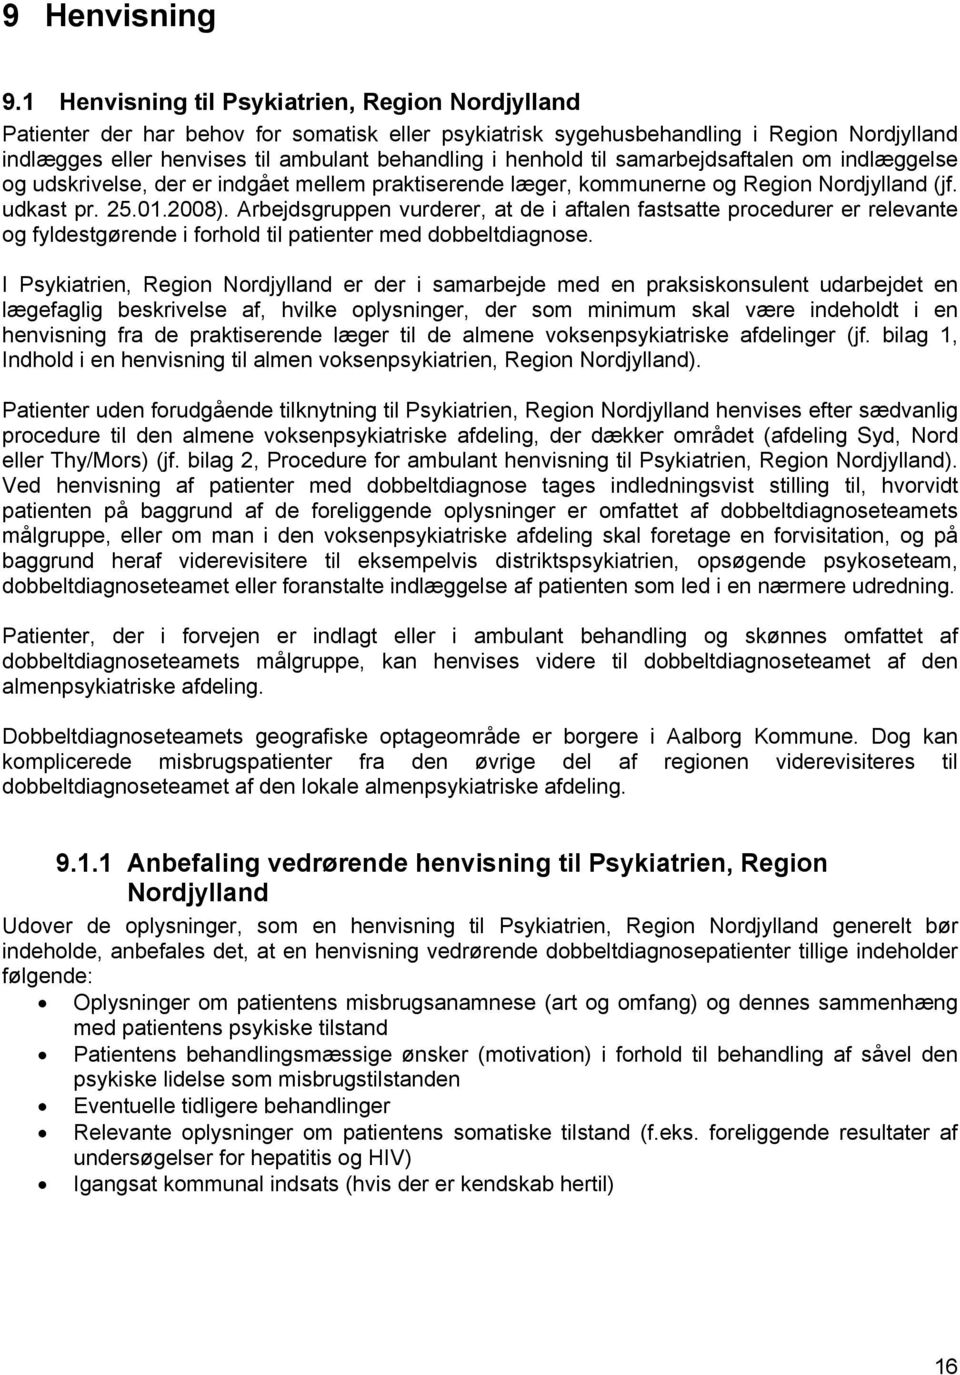 henhold til samarbejdsaftalen om indlæggelse og udskrivelse, der er indgået mellem praktiserende læger, kommunerne og Region Nordjylland (jf. udkast pr. 25.01.2008).